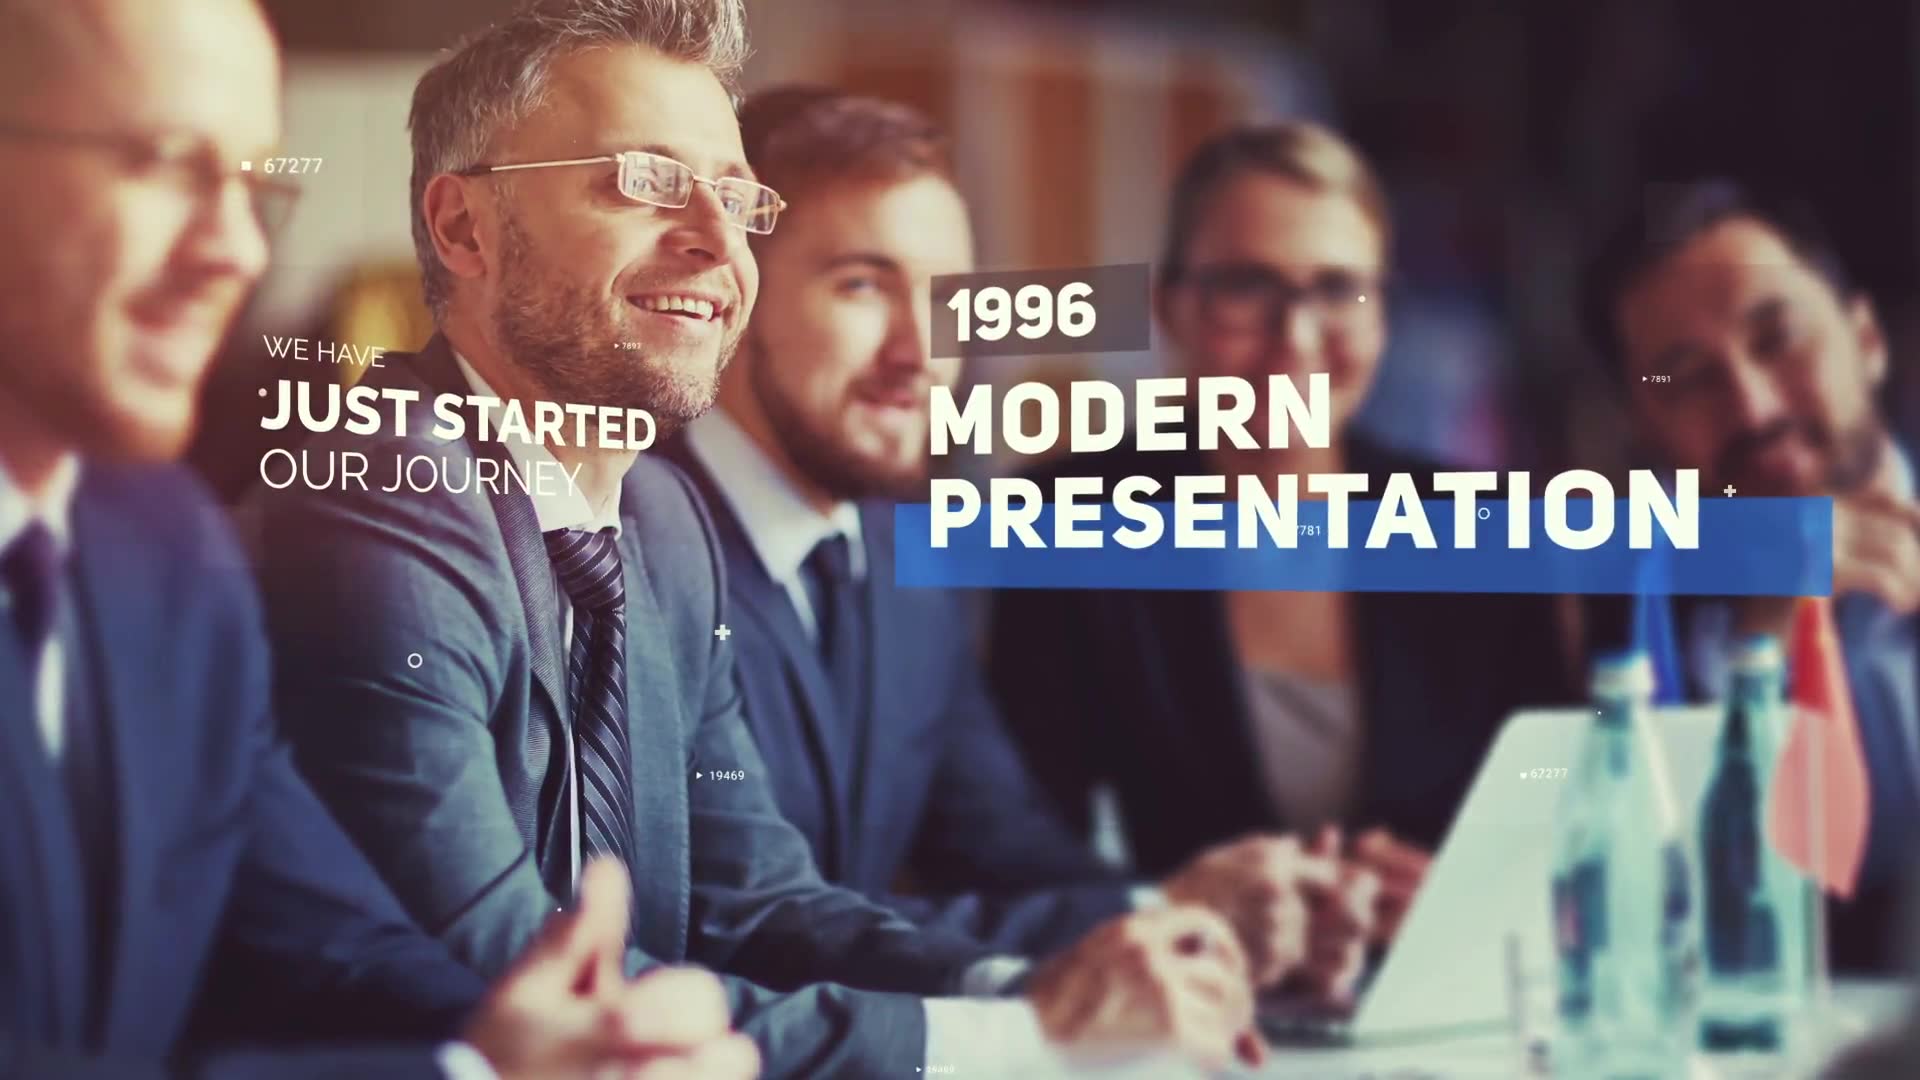 Modern Corporate Slideshow Videohive 25547163 Premiere Pro Image 2